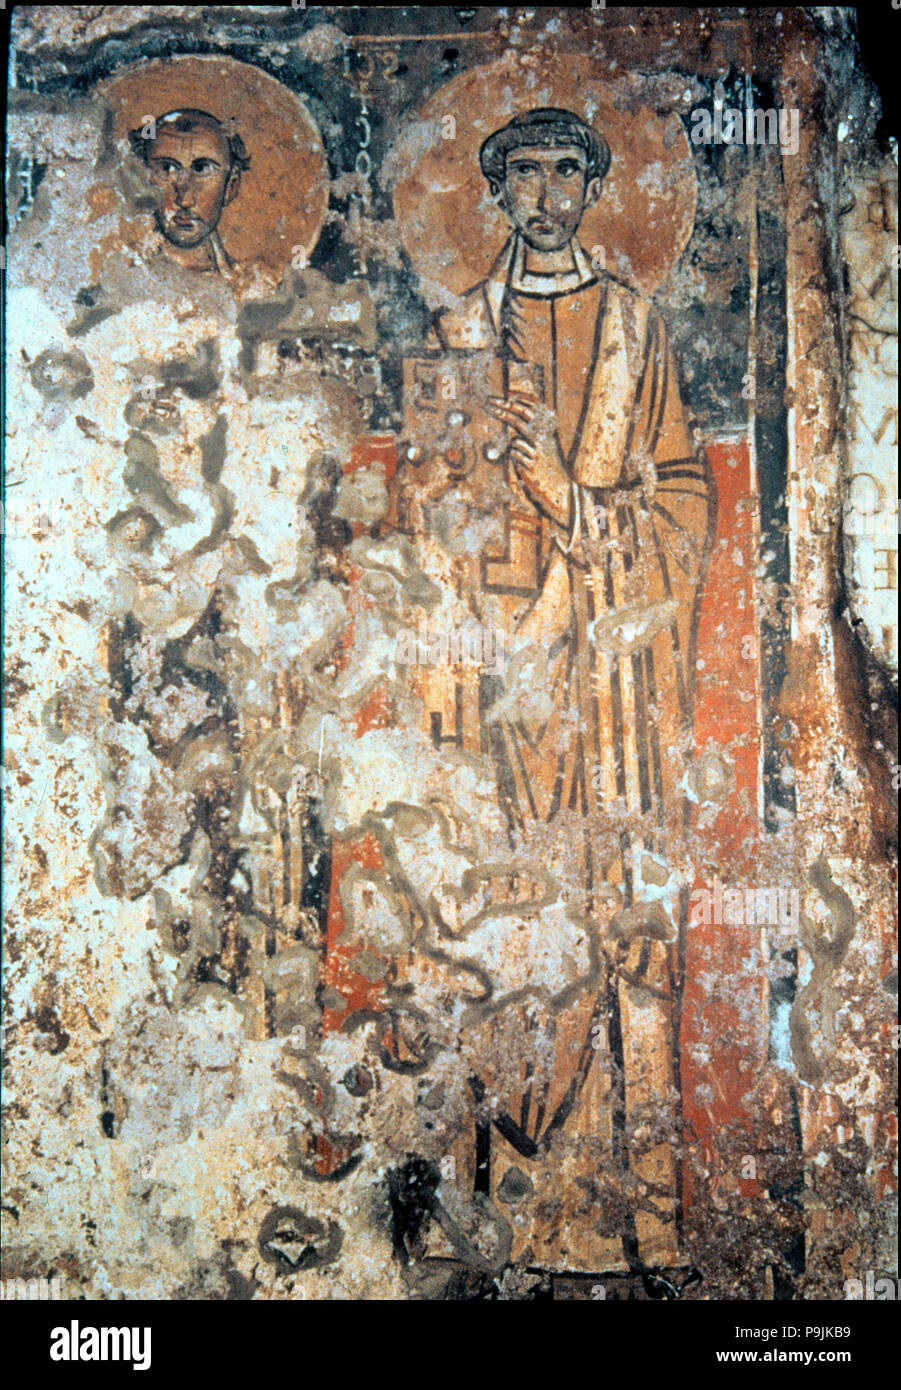 Gemälde mit Heiligen Cyprian und Calixtus, Fresko in der Katakomben des hl. Calixtus in Rom. Stockfoto